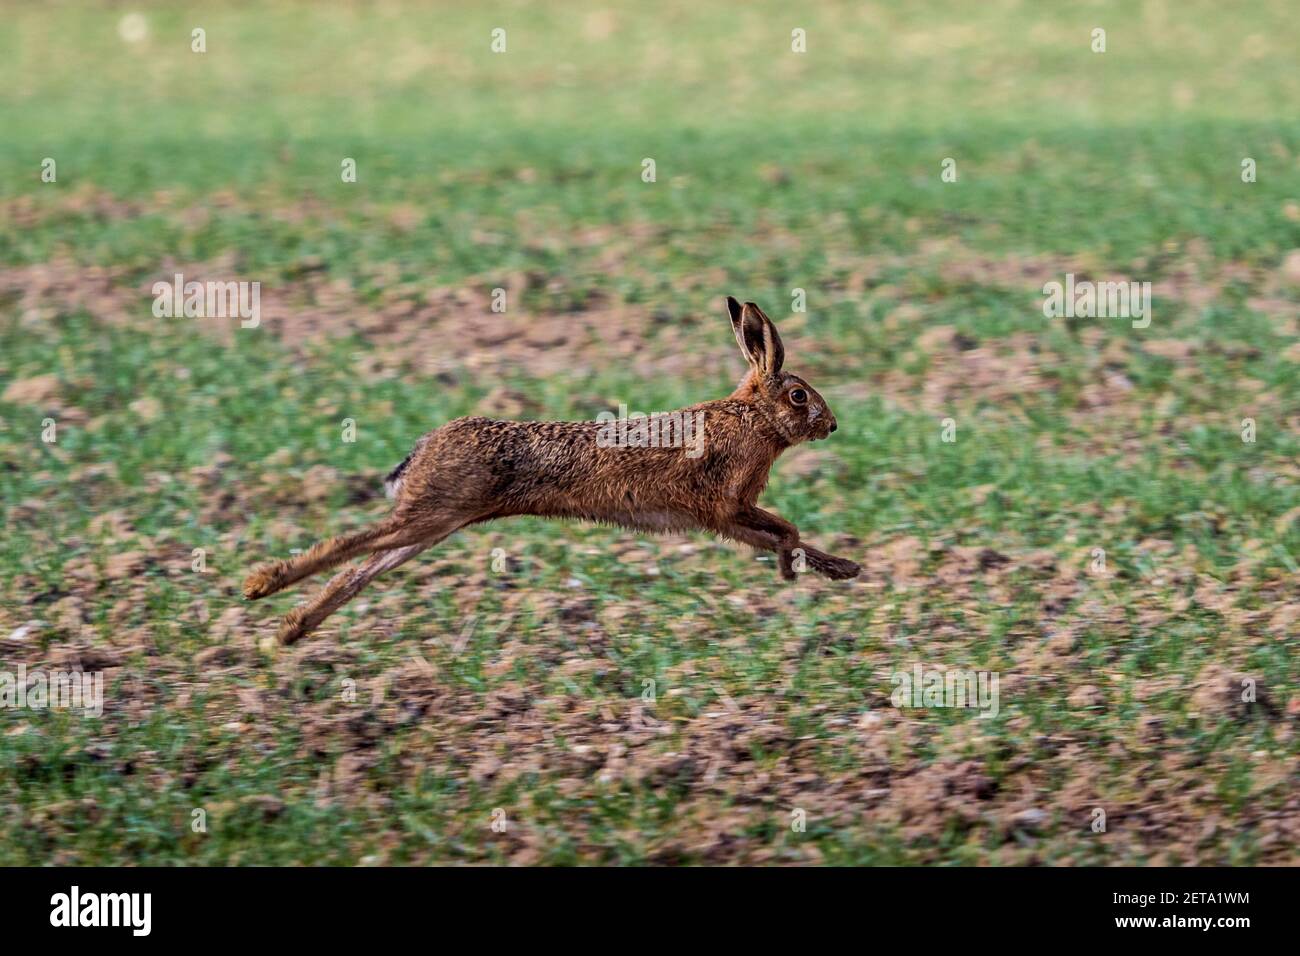 Running Hare - Lièvre européen traversant un champ dans le sud de l'Angleterre de Cambridgeshire. Marron Lièvre en cours d'exécution. Lepus europaeus. Banque D'Images